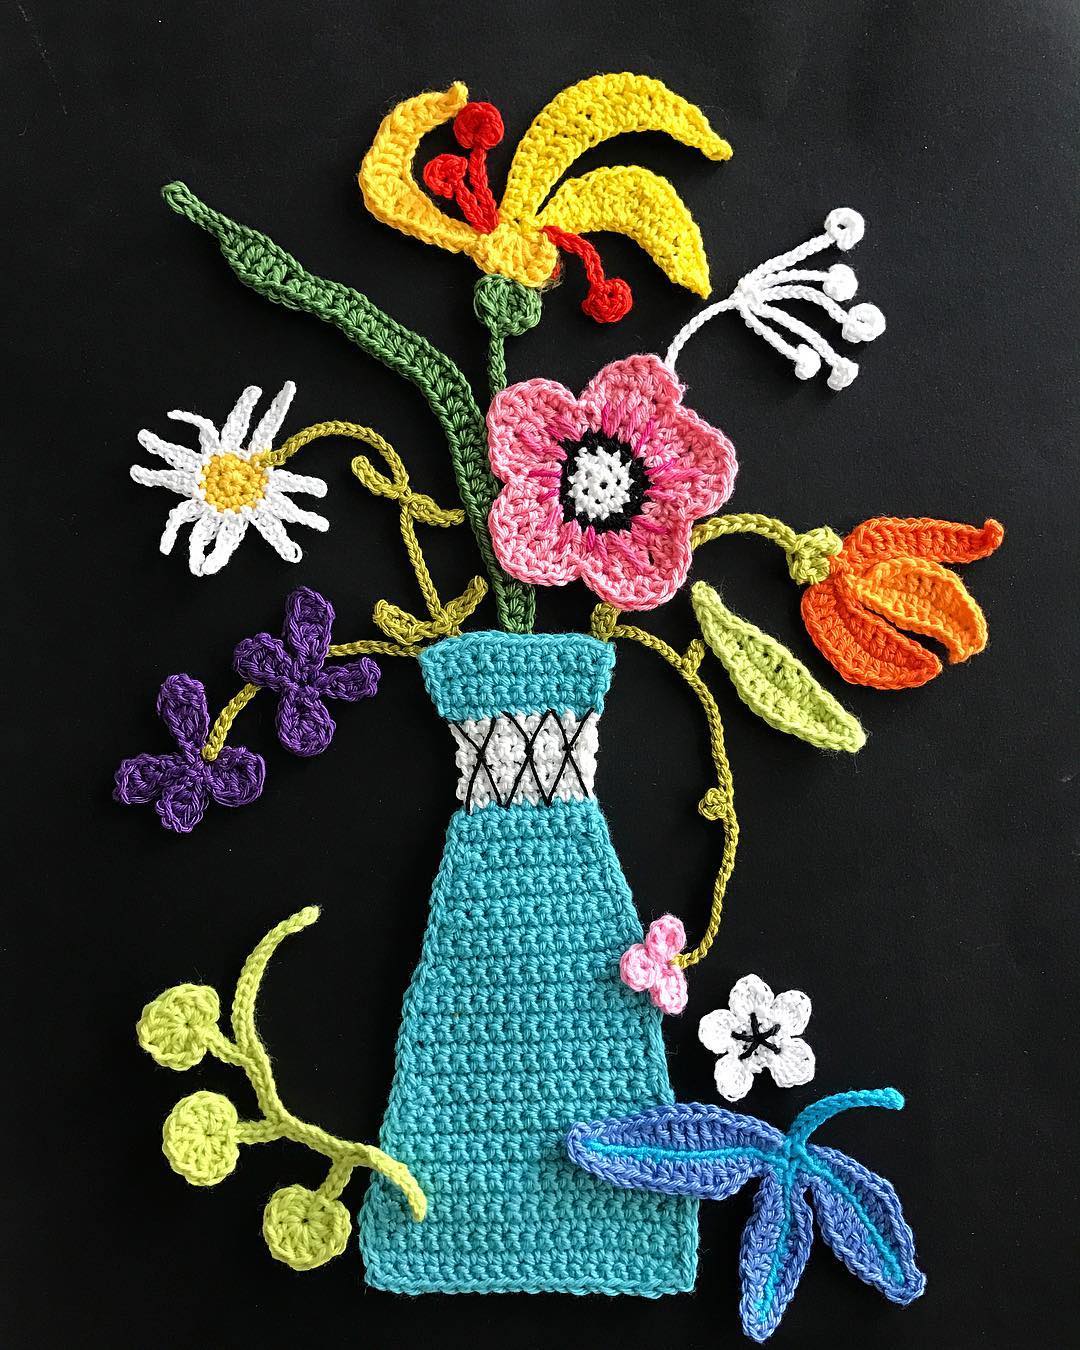 Crochet art by Tuija Heikkinen